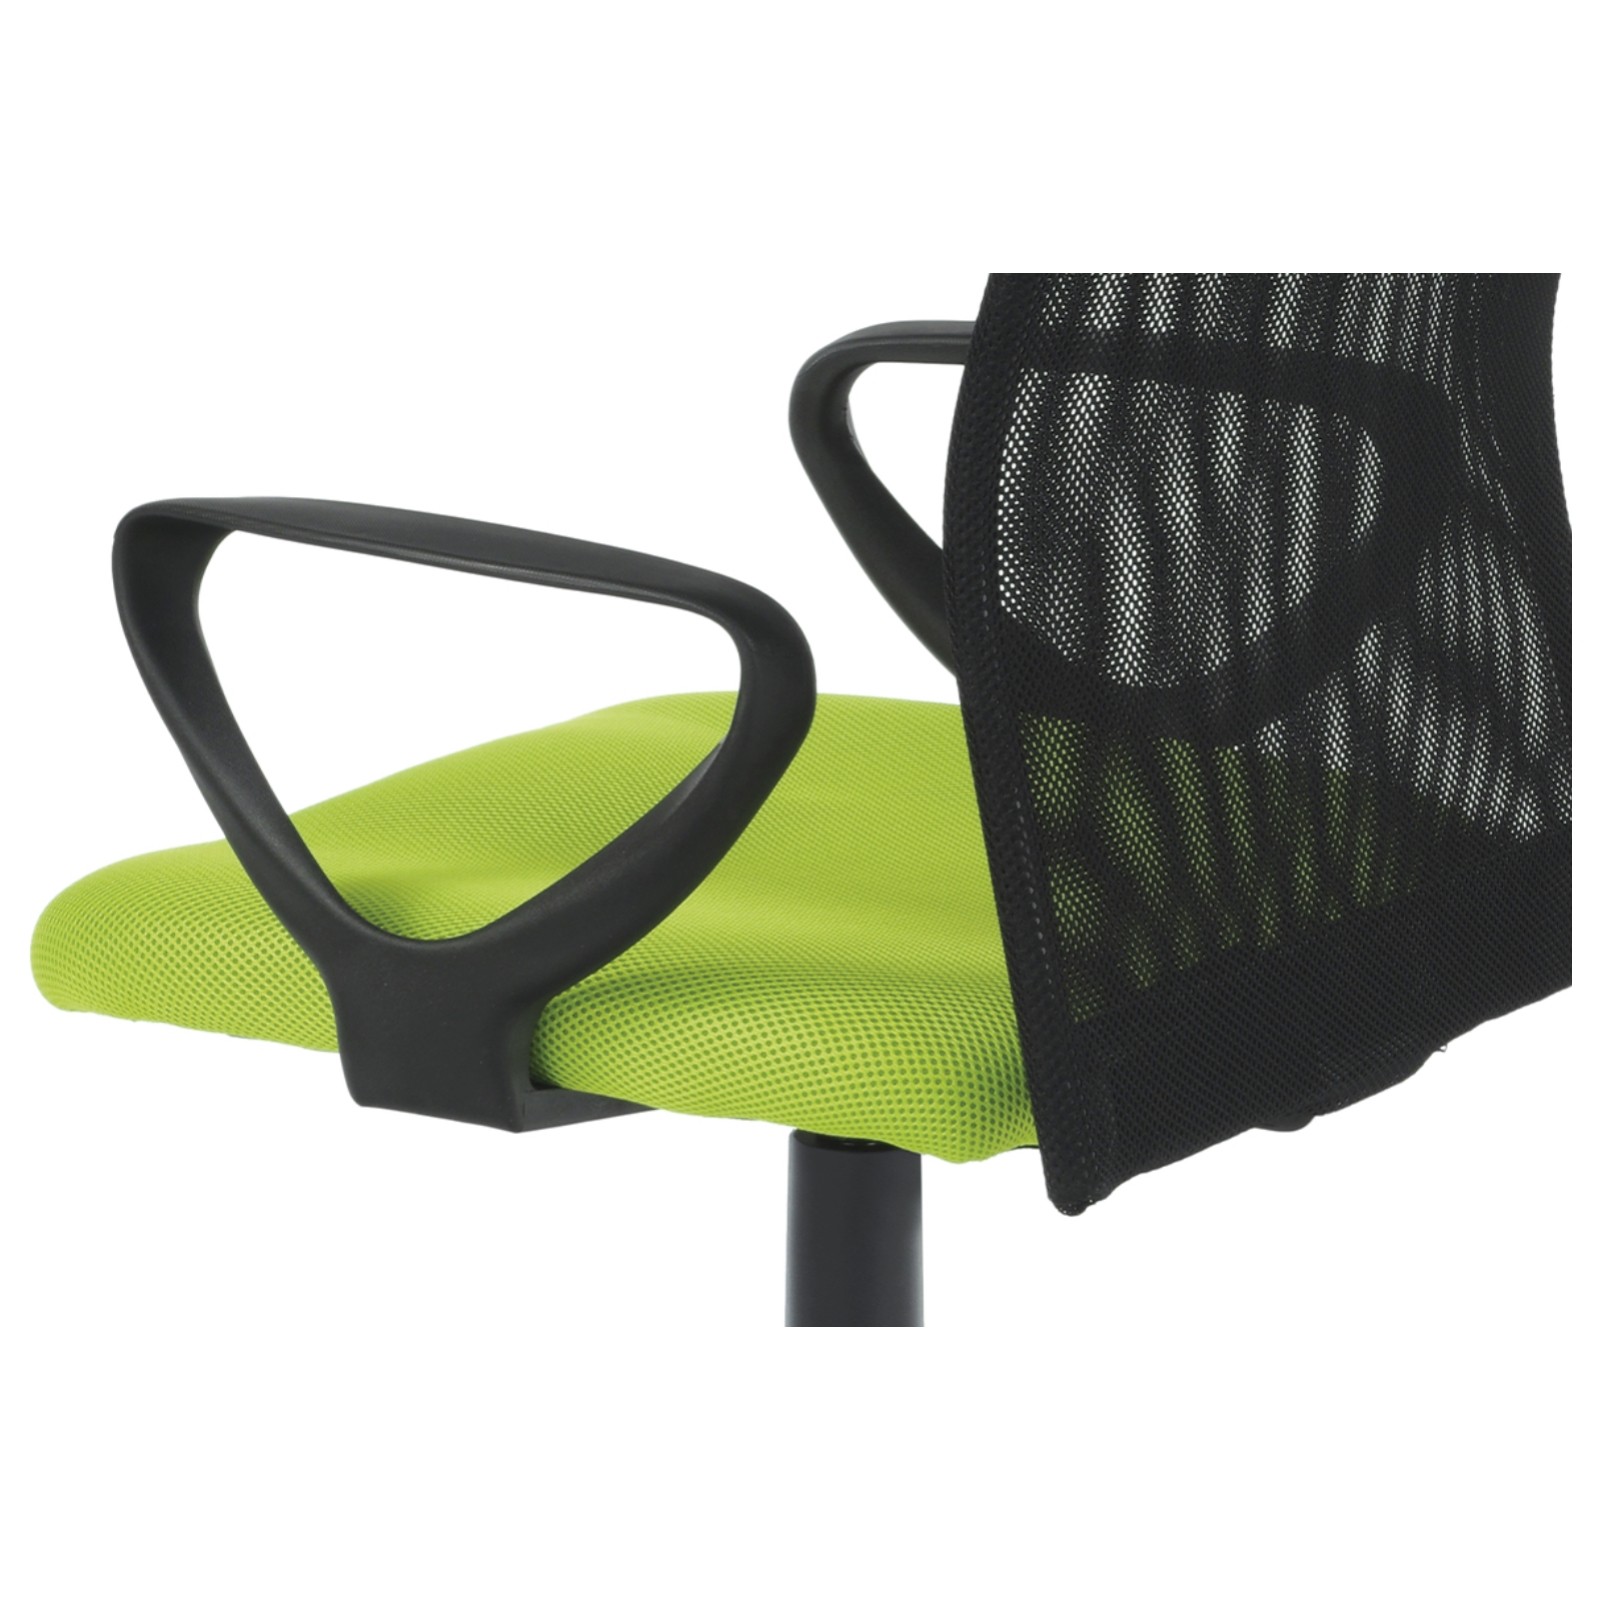 Sconto Kancelárska stolička FRESH zelená/čierna.